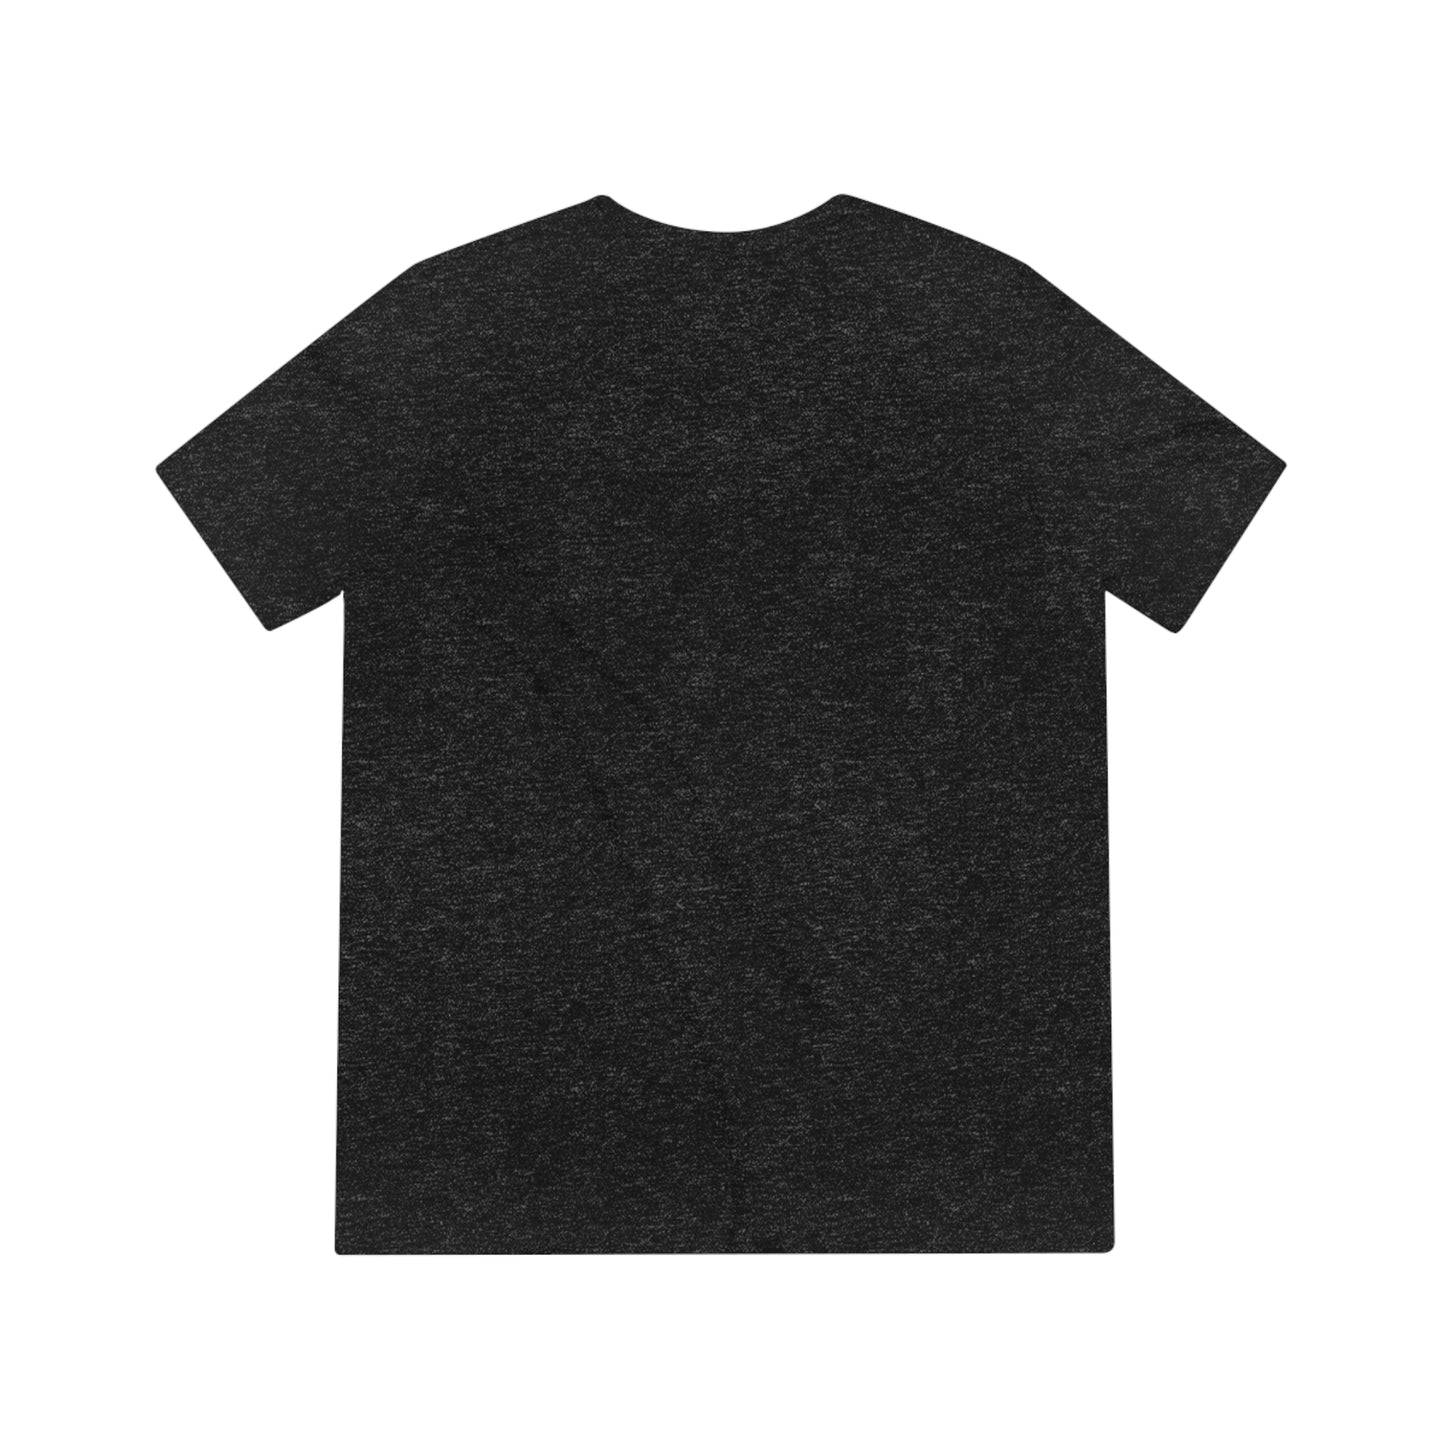 Moose T-Shirt